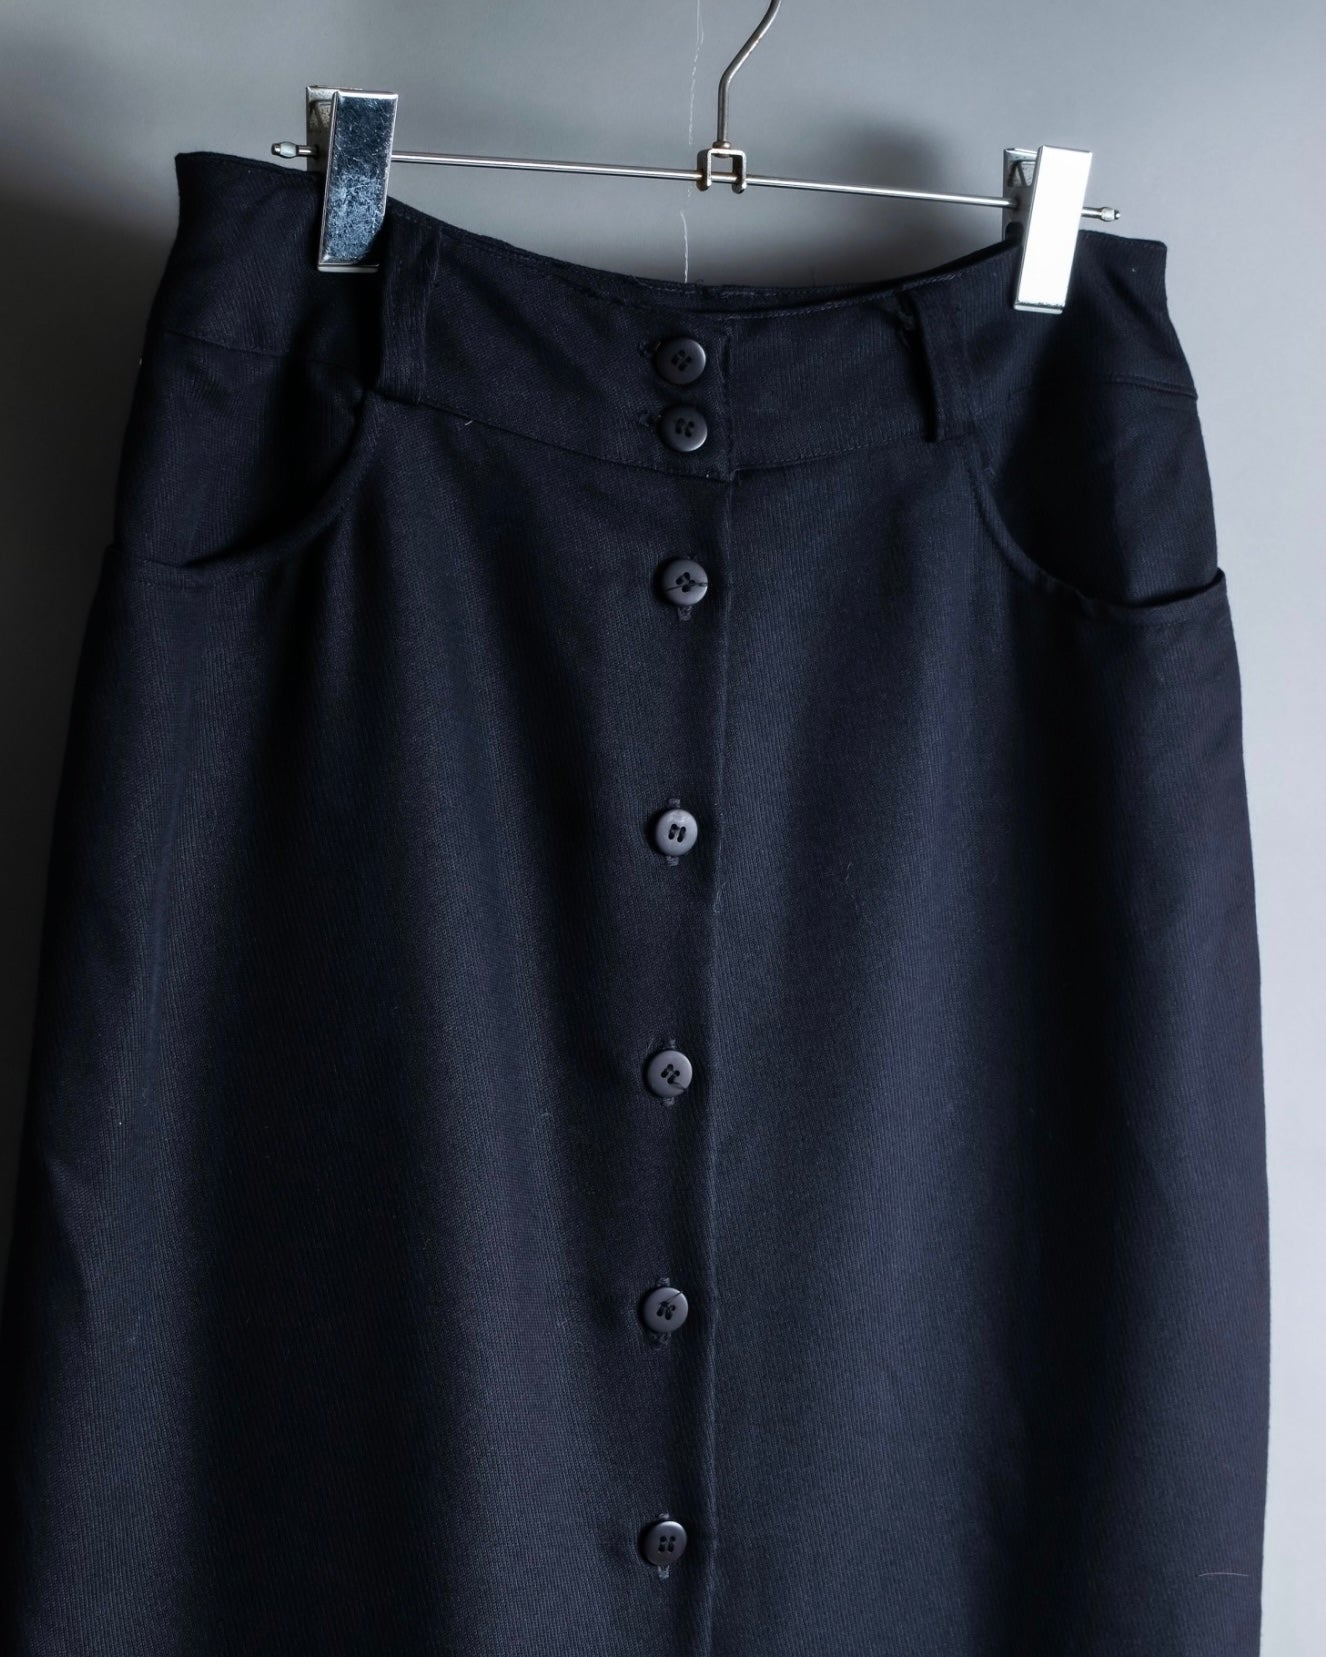 Vintage pants design skirt